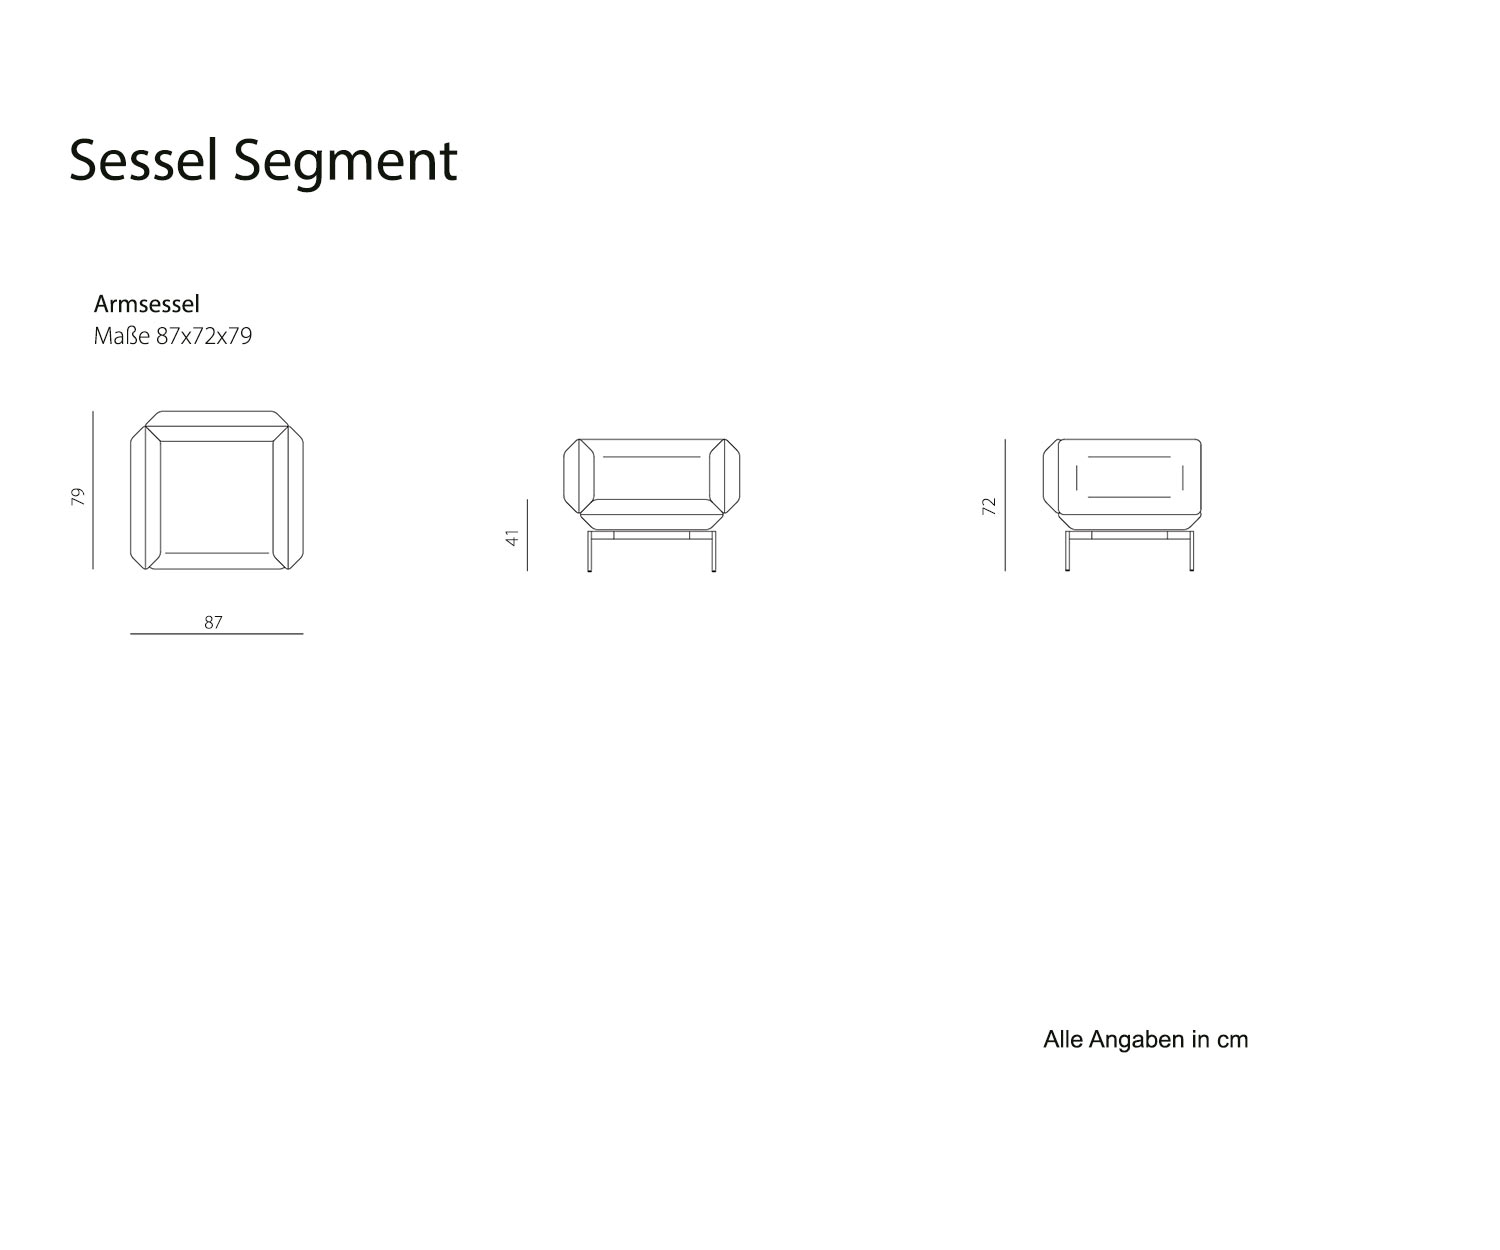 Skizze Prostoria Segment Design Armsessel bequem exklusiv modern hochwertig grau schwarz blau handgearbeitet Sessel fuer wohnzimmer